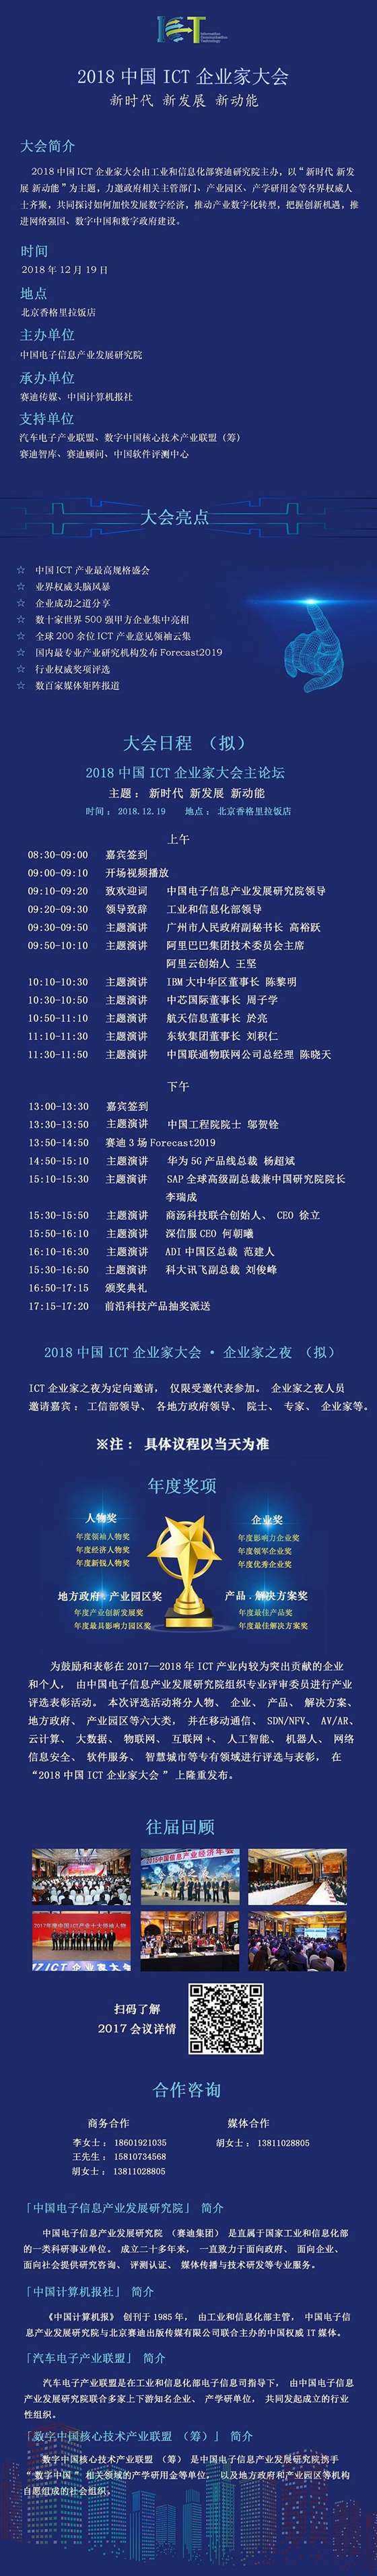 2018中国ICT企业家大会活动行（1000）.jpg